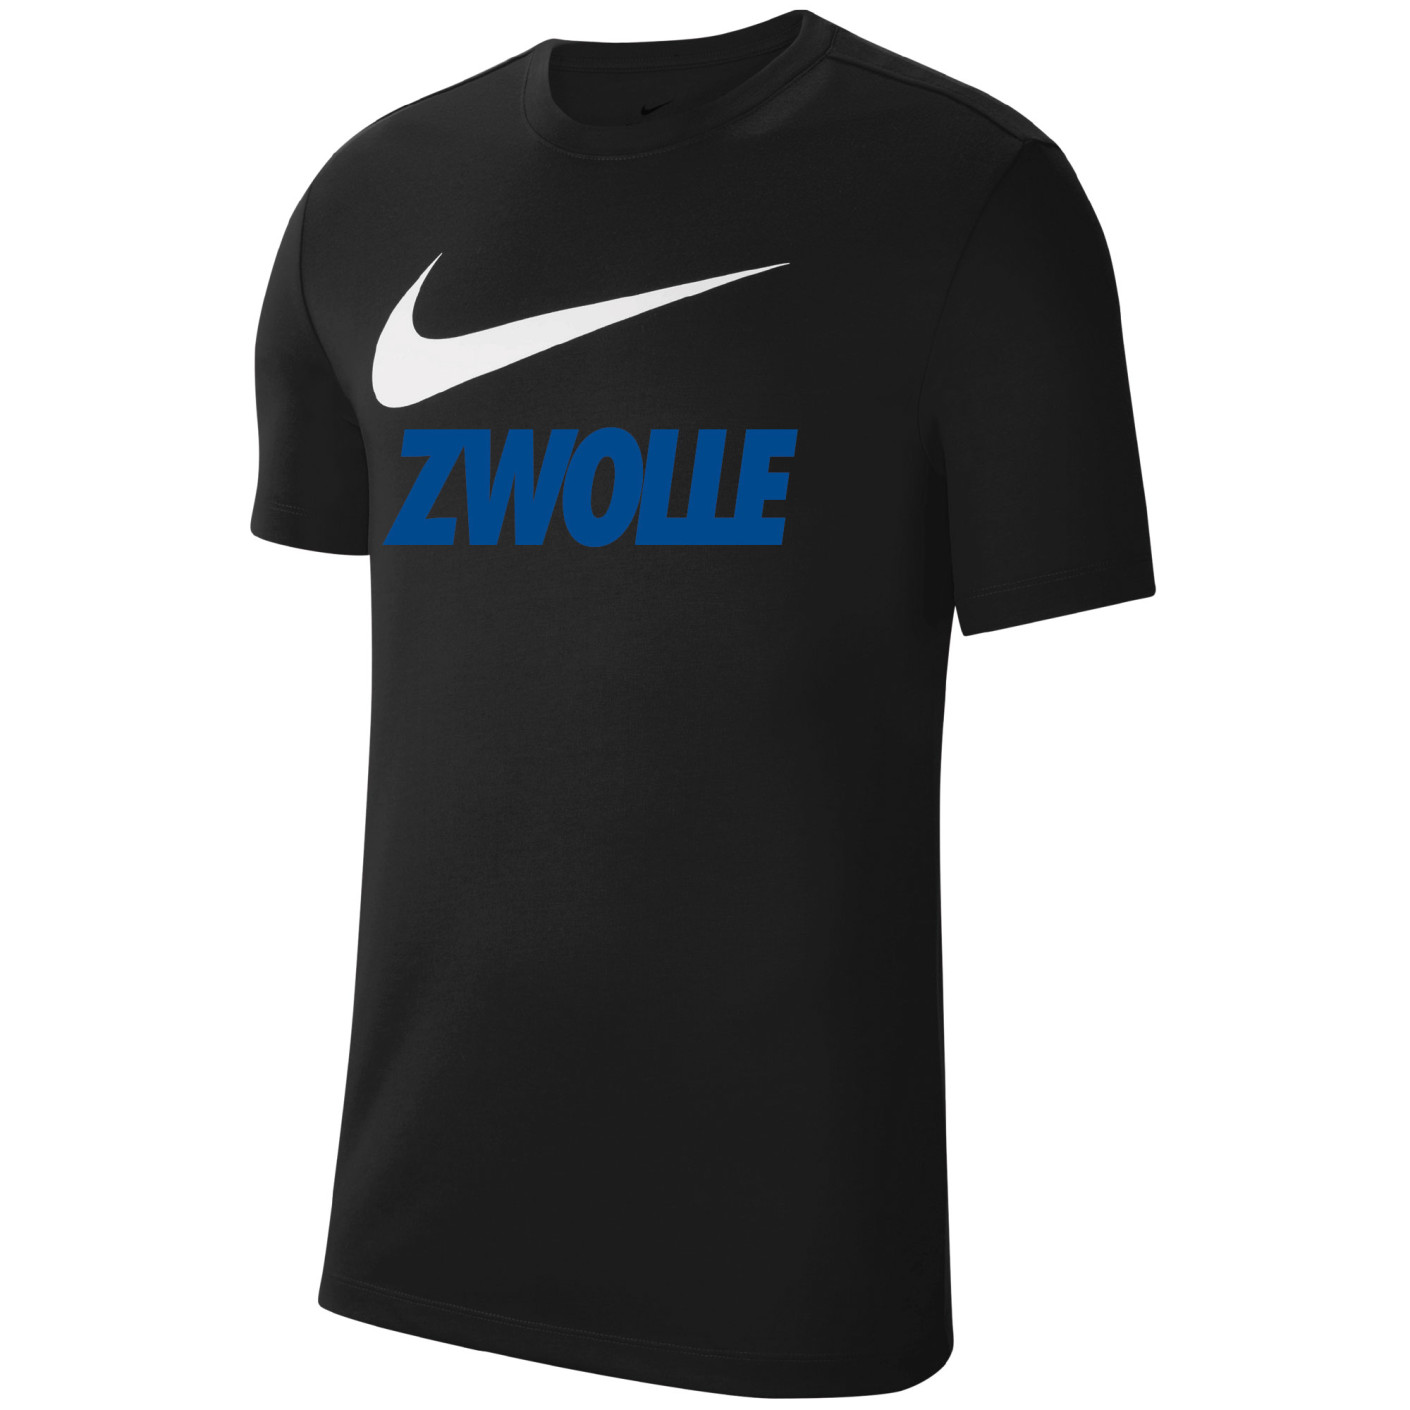 Verlammen Nylon Tien Nike Zwolle Team Club Tee 20 Zwart Blauw